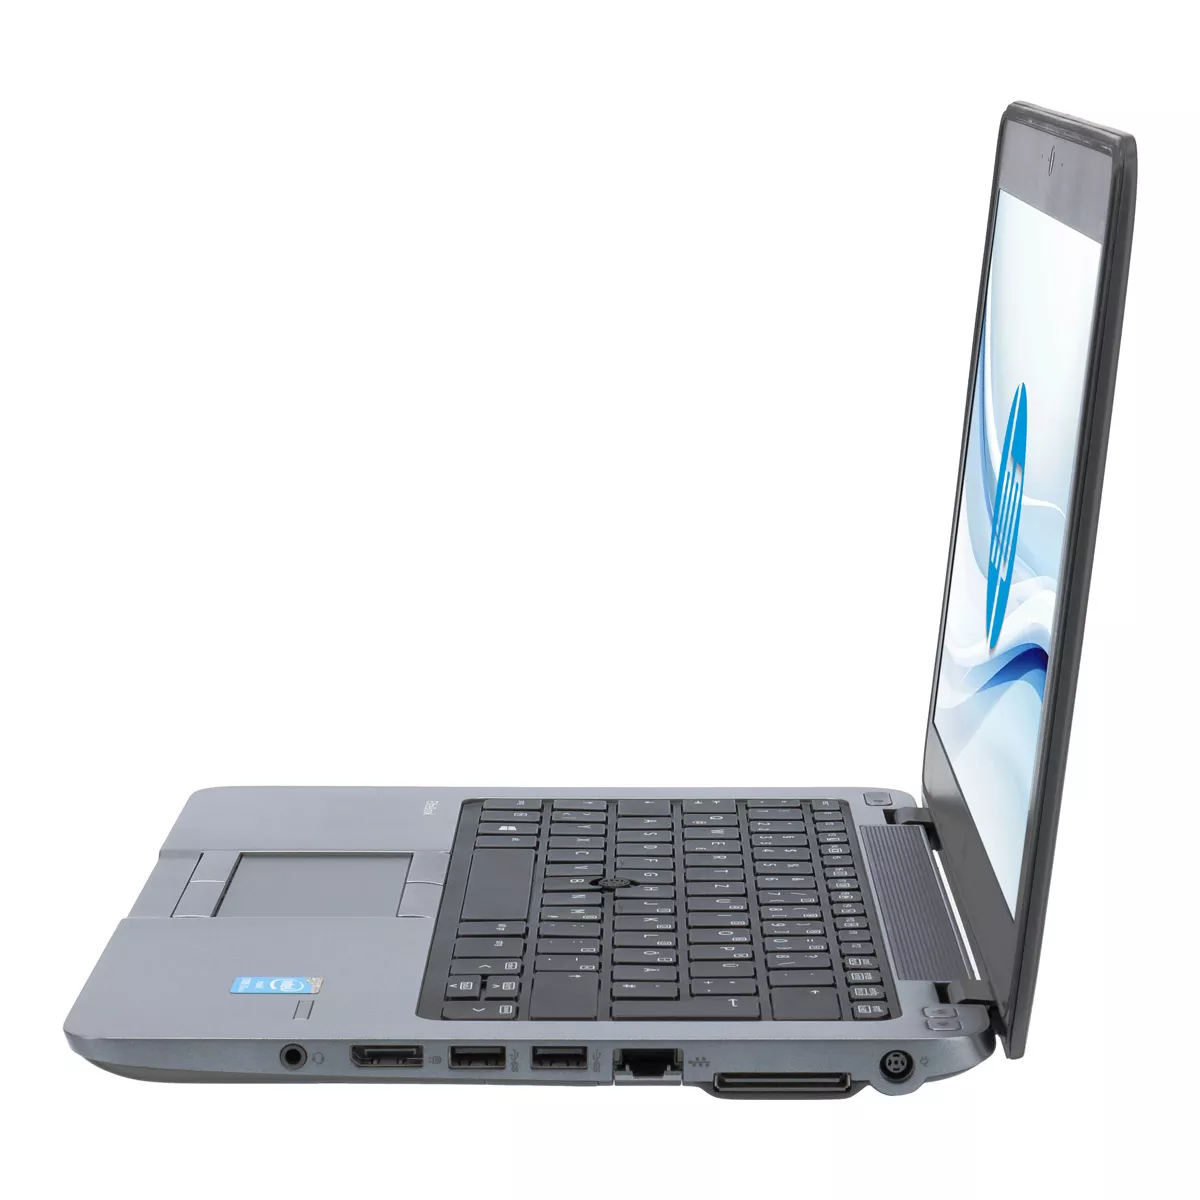 HP EliteBook 820 G2 Core i7 5600U 8 GB 240 GB SSD Webcam A